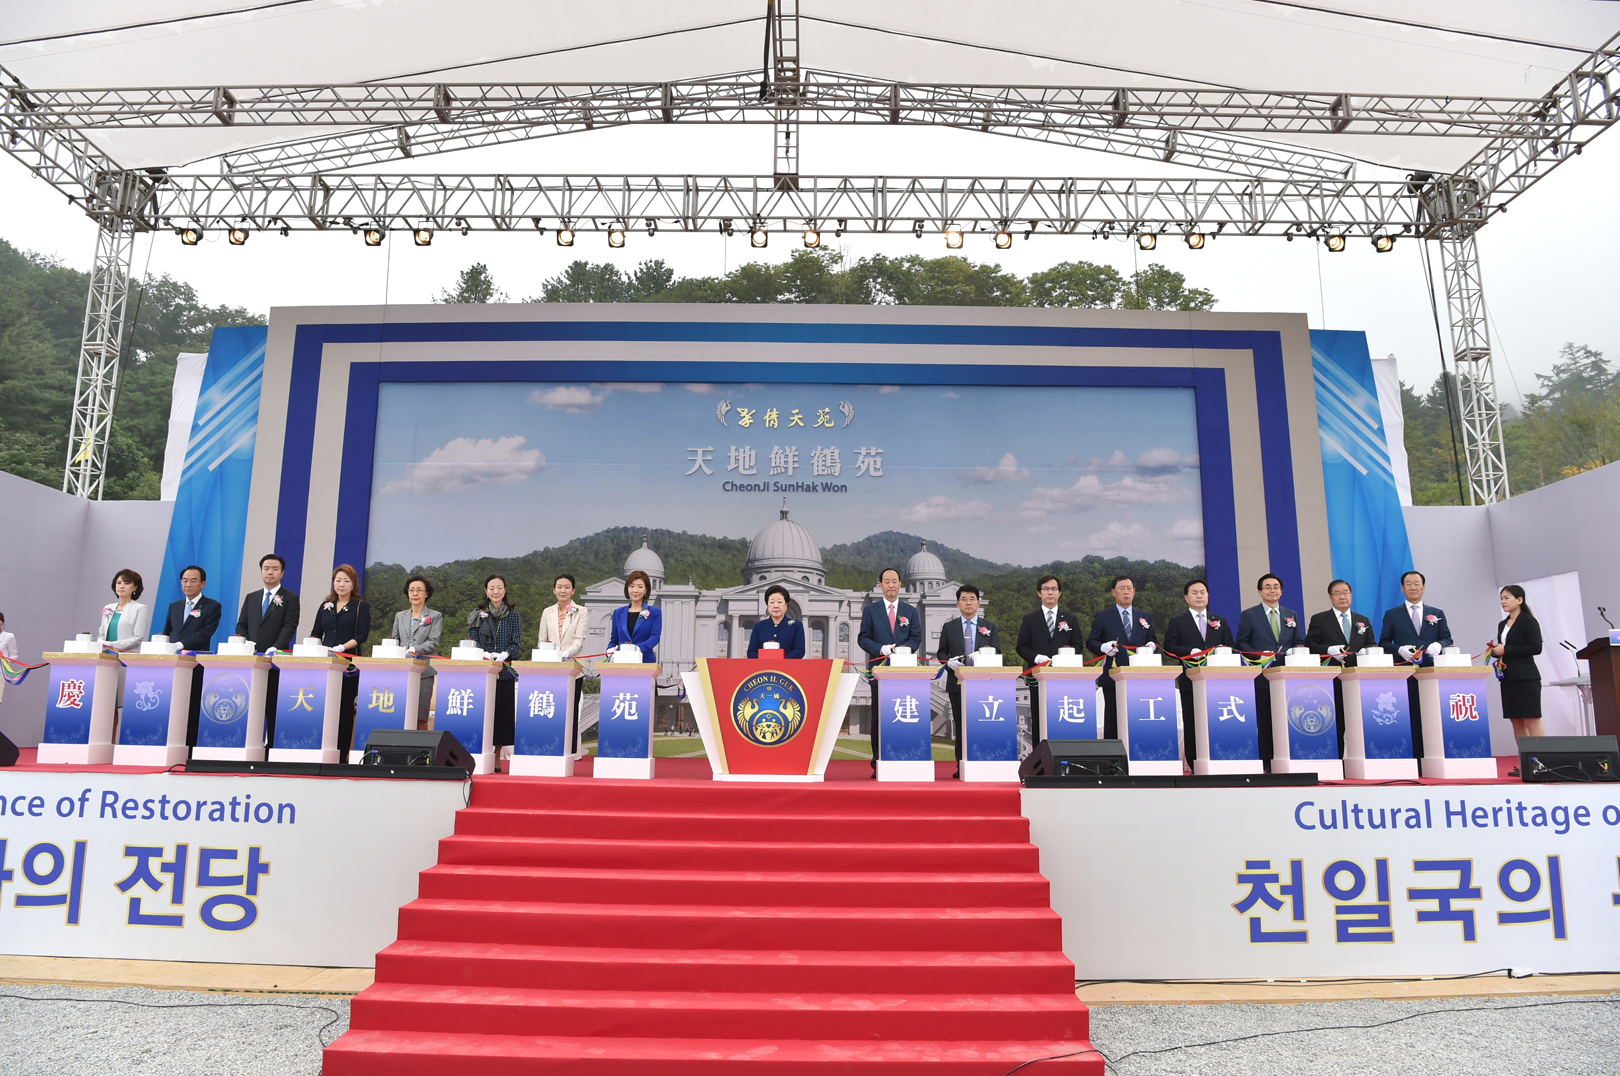 Groundbreaking Ceremony of Cheonji Sunhakwon (2017.9.8)